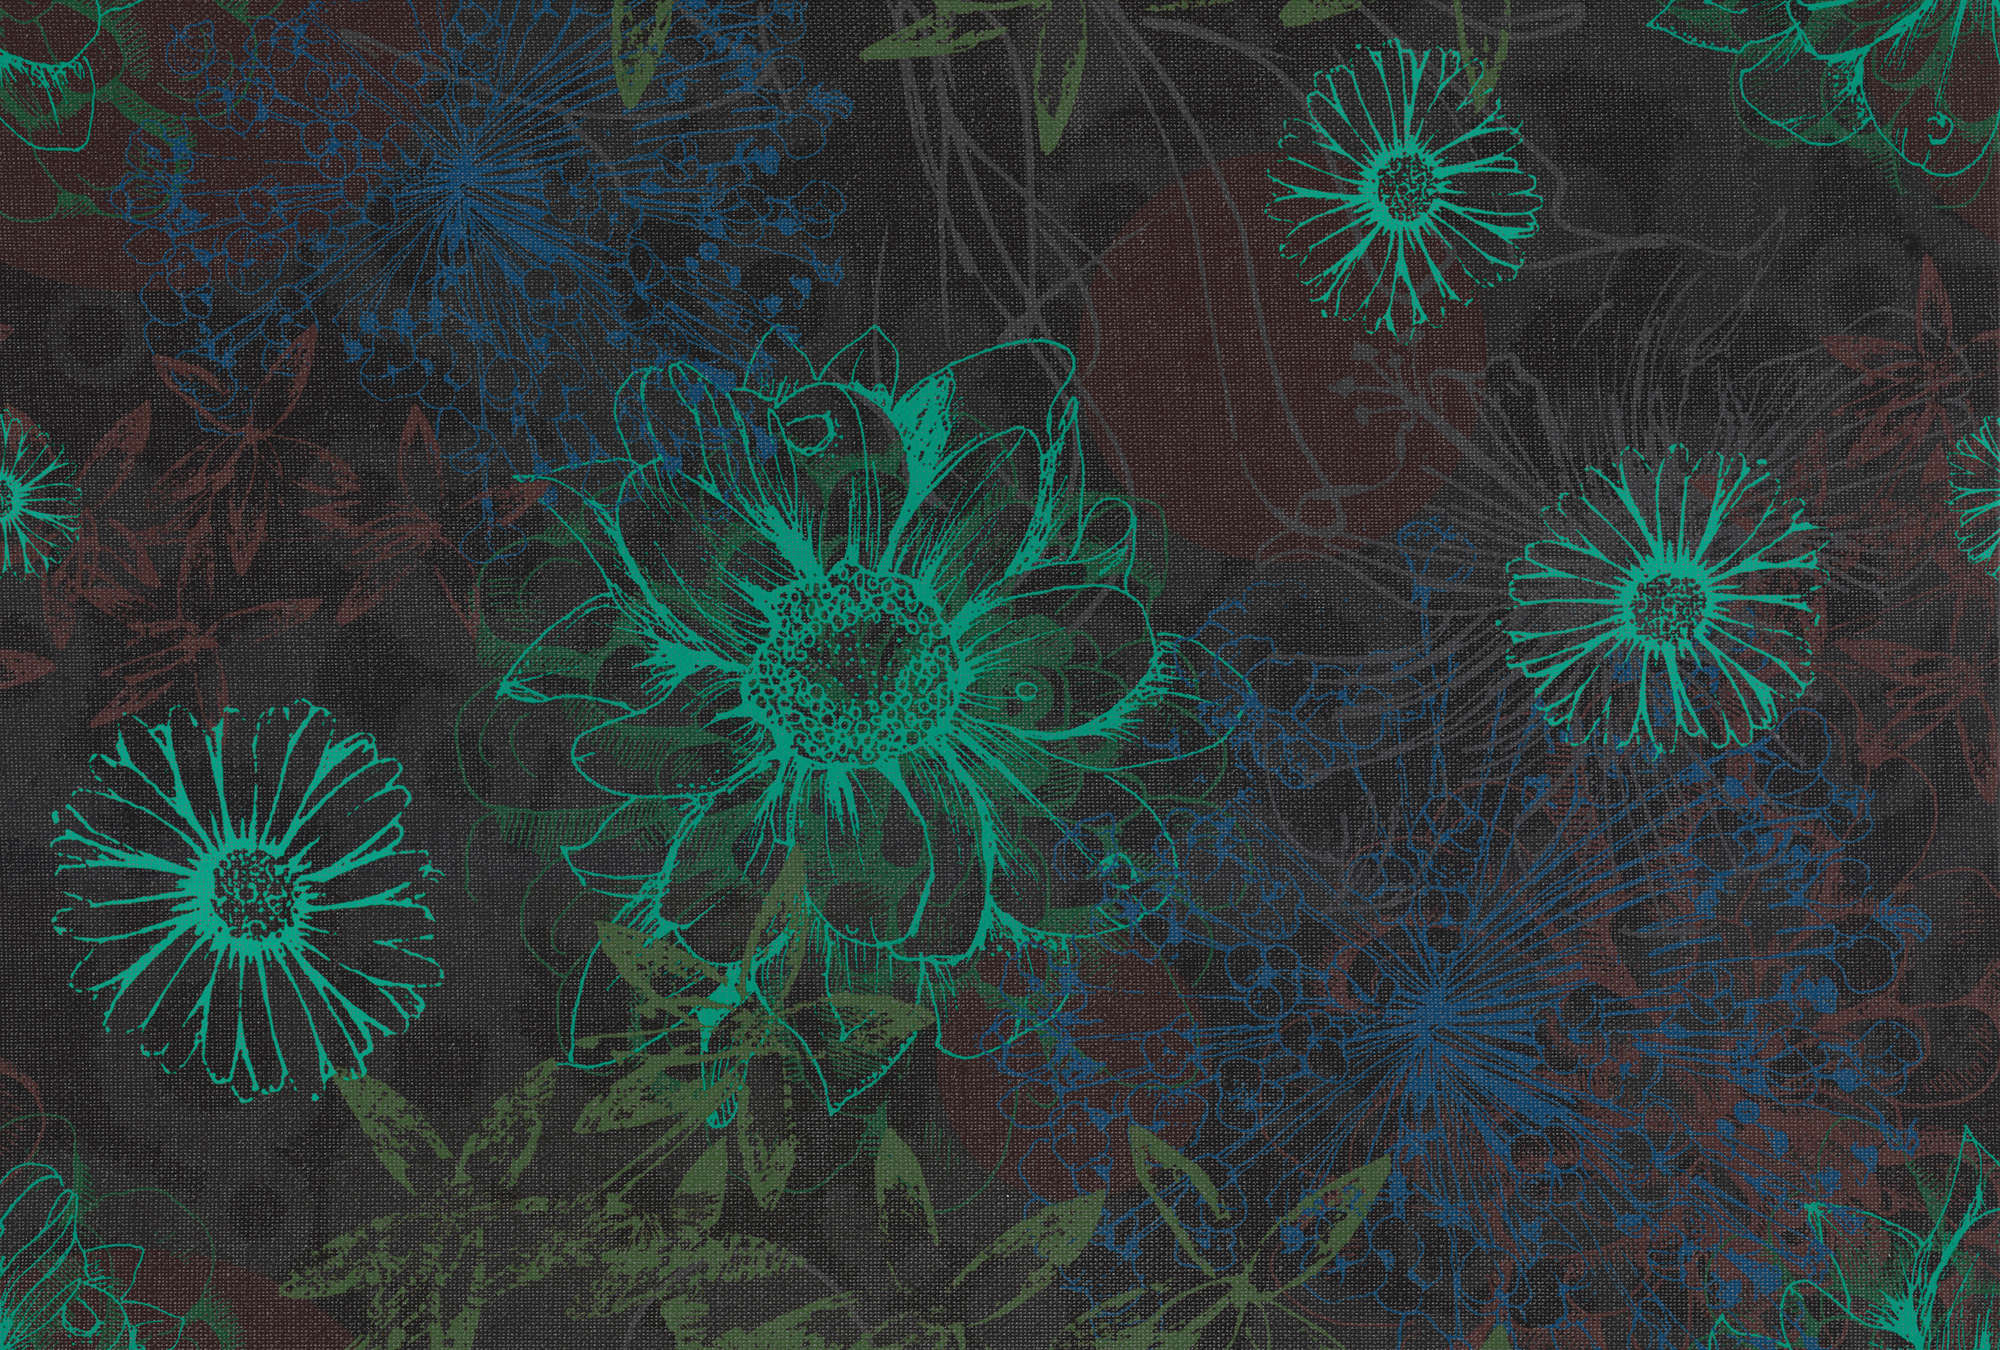             Bloemenbehang met helder bloempatroon - Groen, blauw, bruin
        